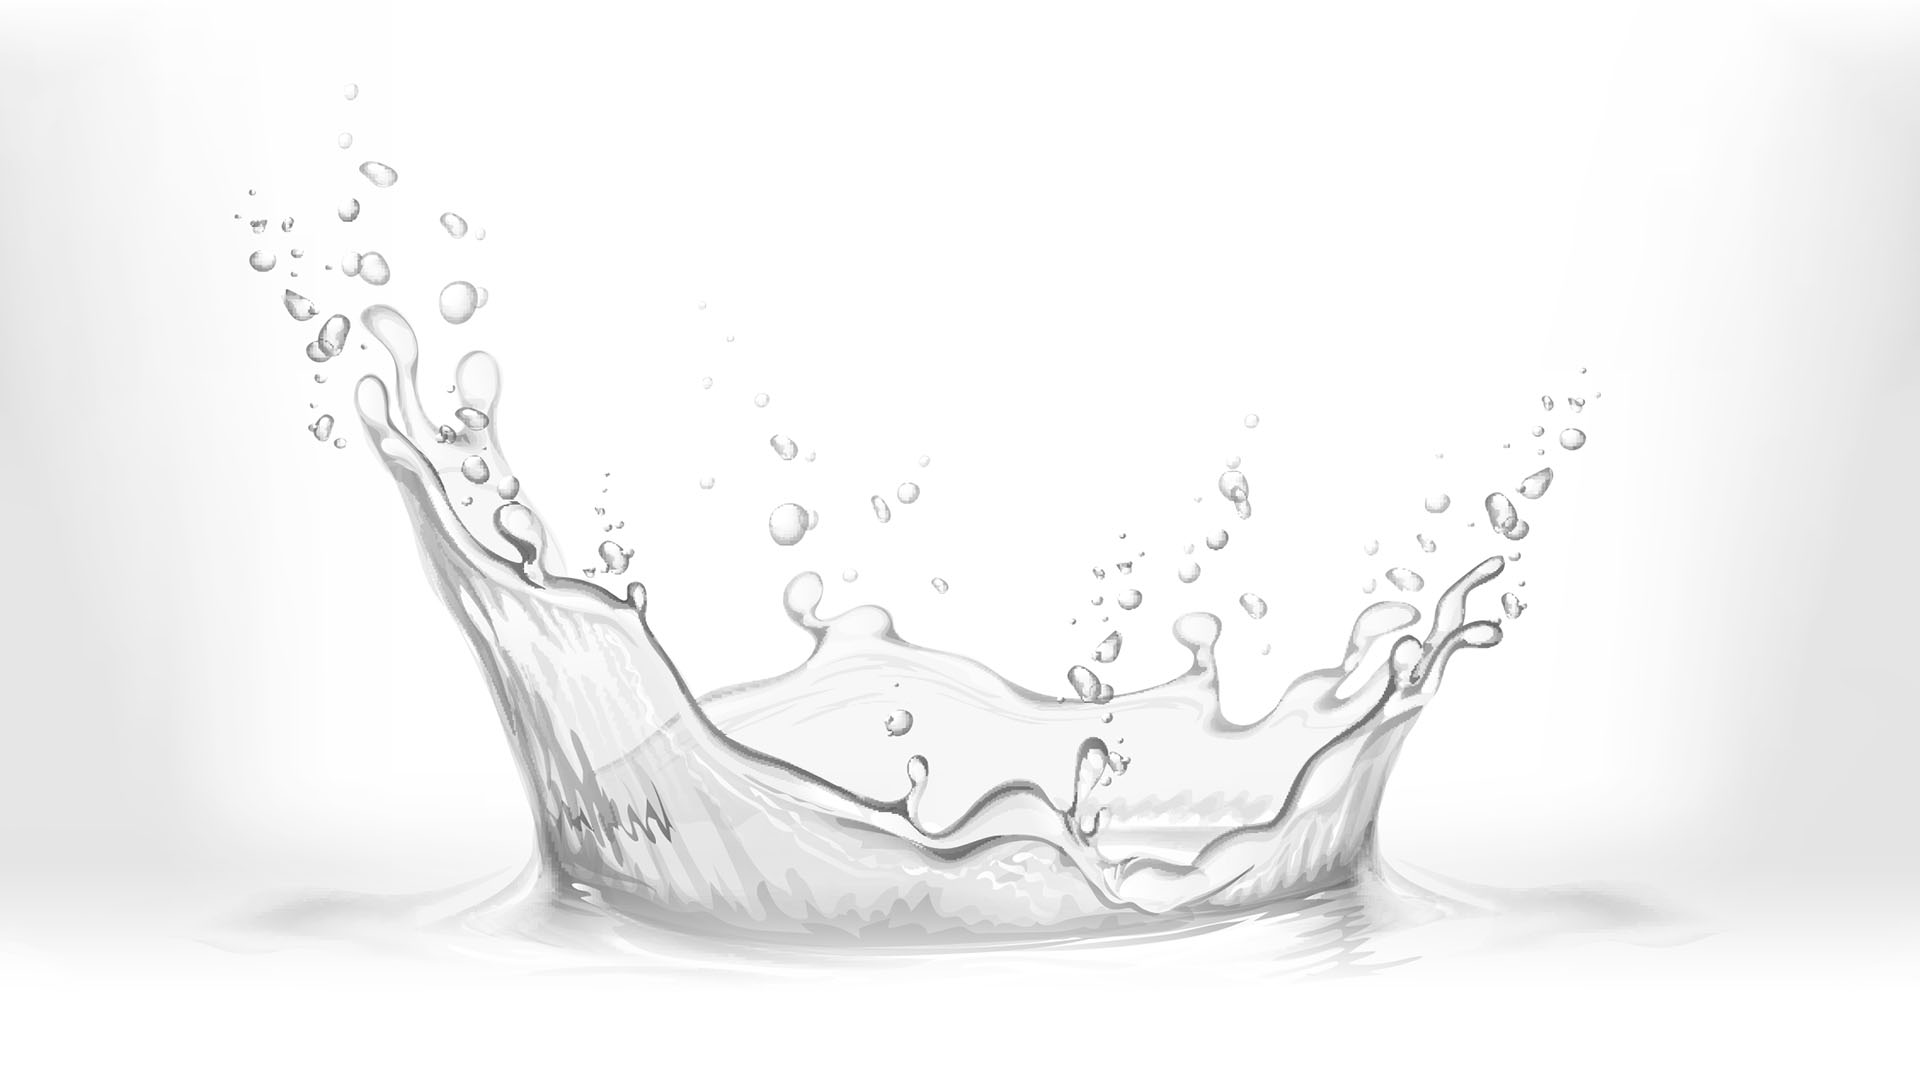 Splashing water in black and white.